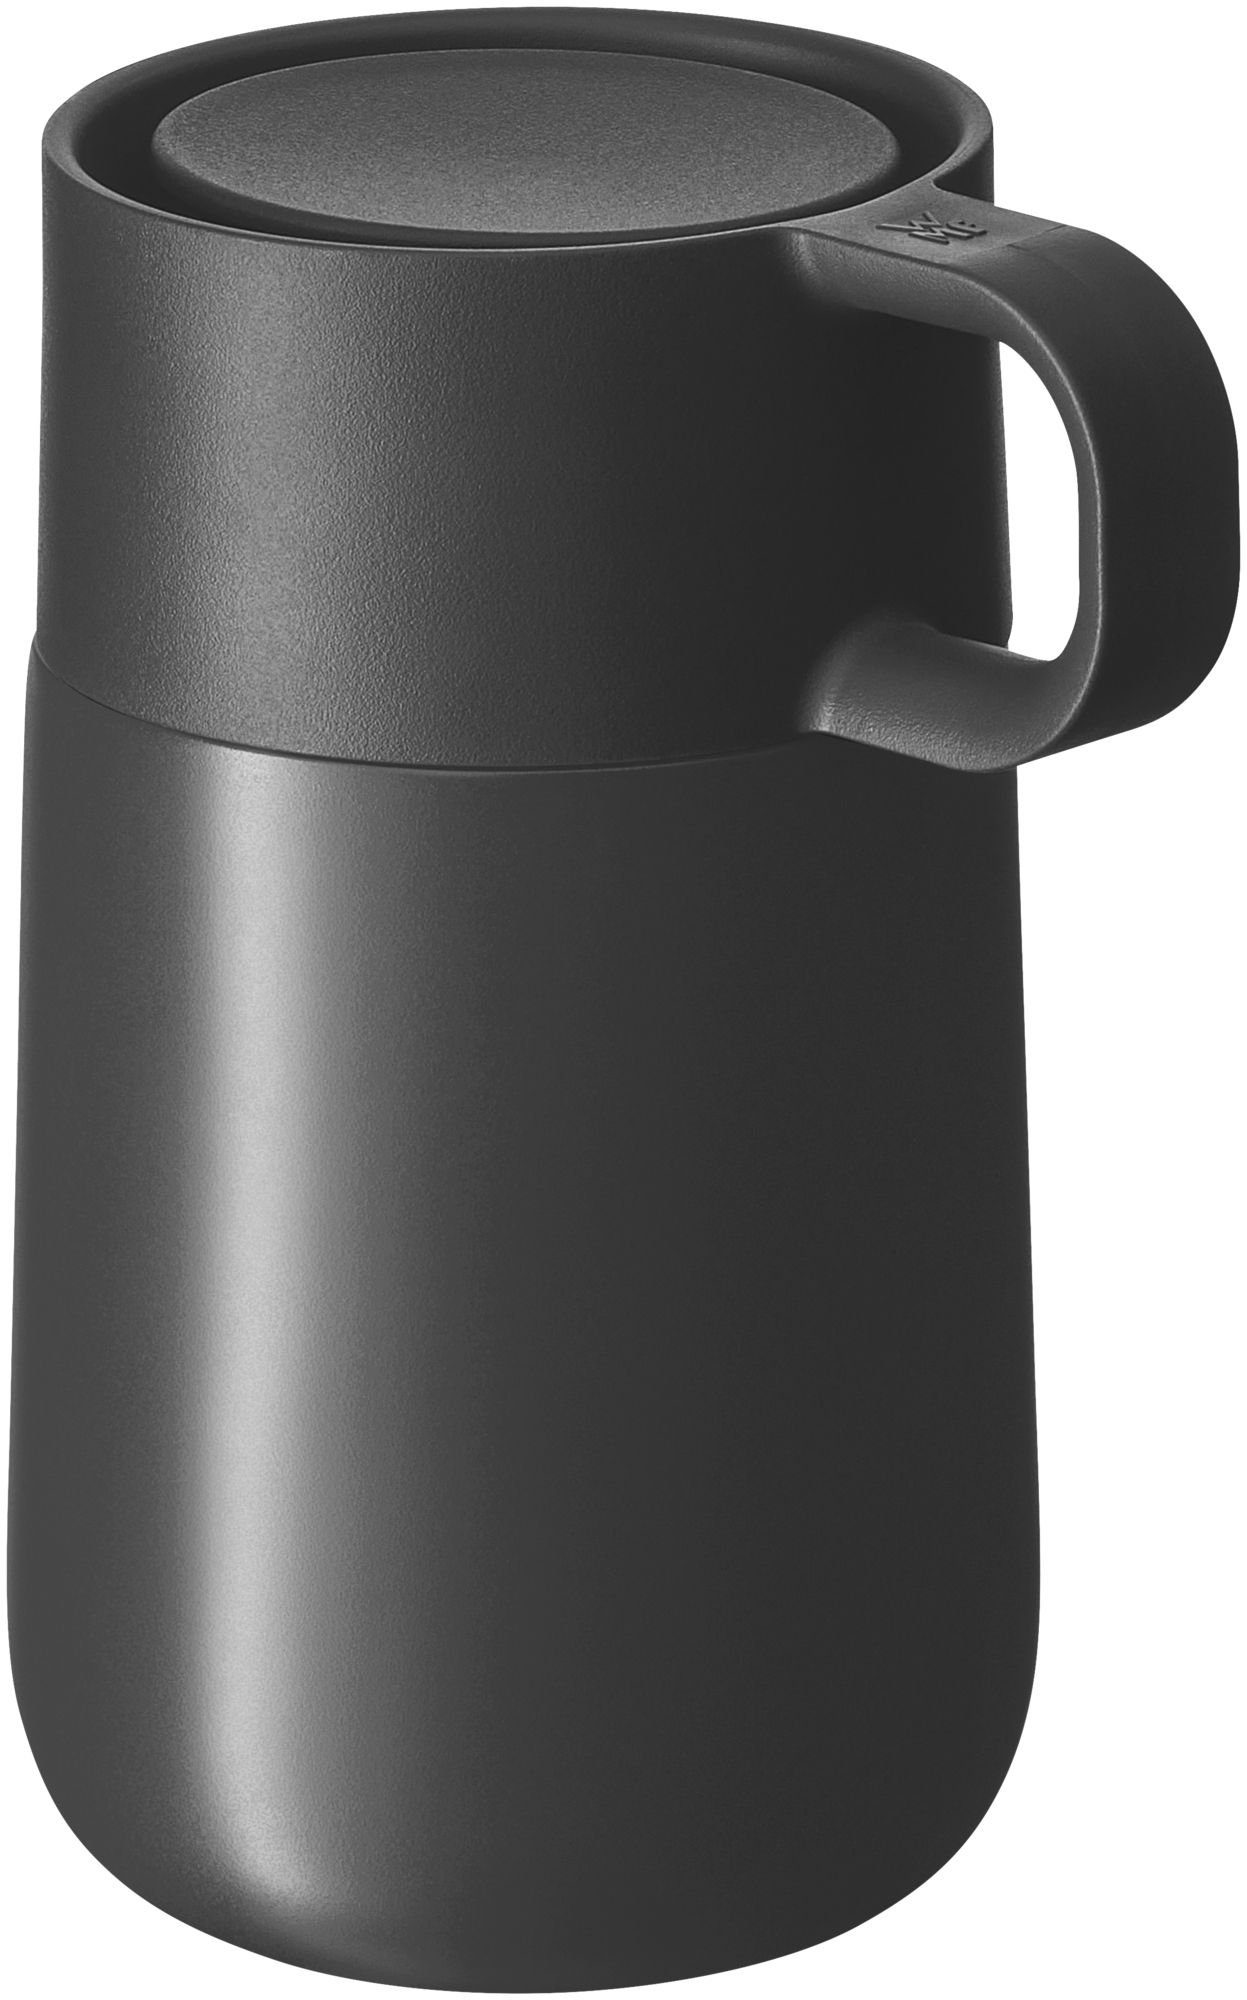 WMF Thermobecher Impulse, Inhalt: 1x Coffee to go Becher mit  Automatikverschluss (Füllmenge 300ml/ 9 oz, Höhe 14 cm / ohne Deckel 12 cm,  Ø 7,8 cm) - Artikelnummer: 0690536800 online kaufen | OTTO